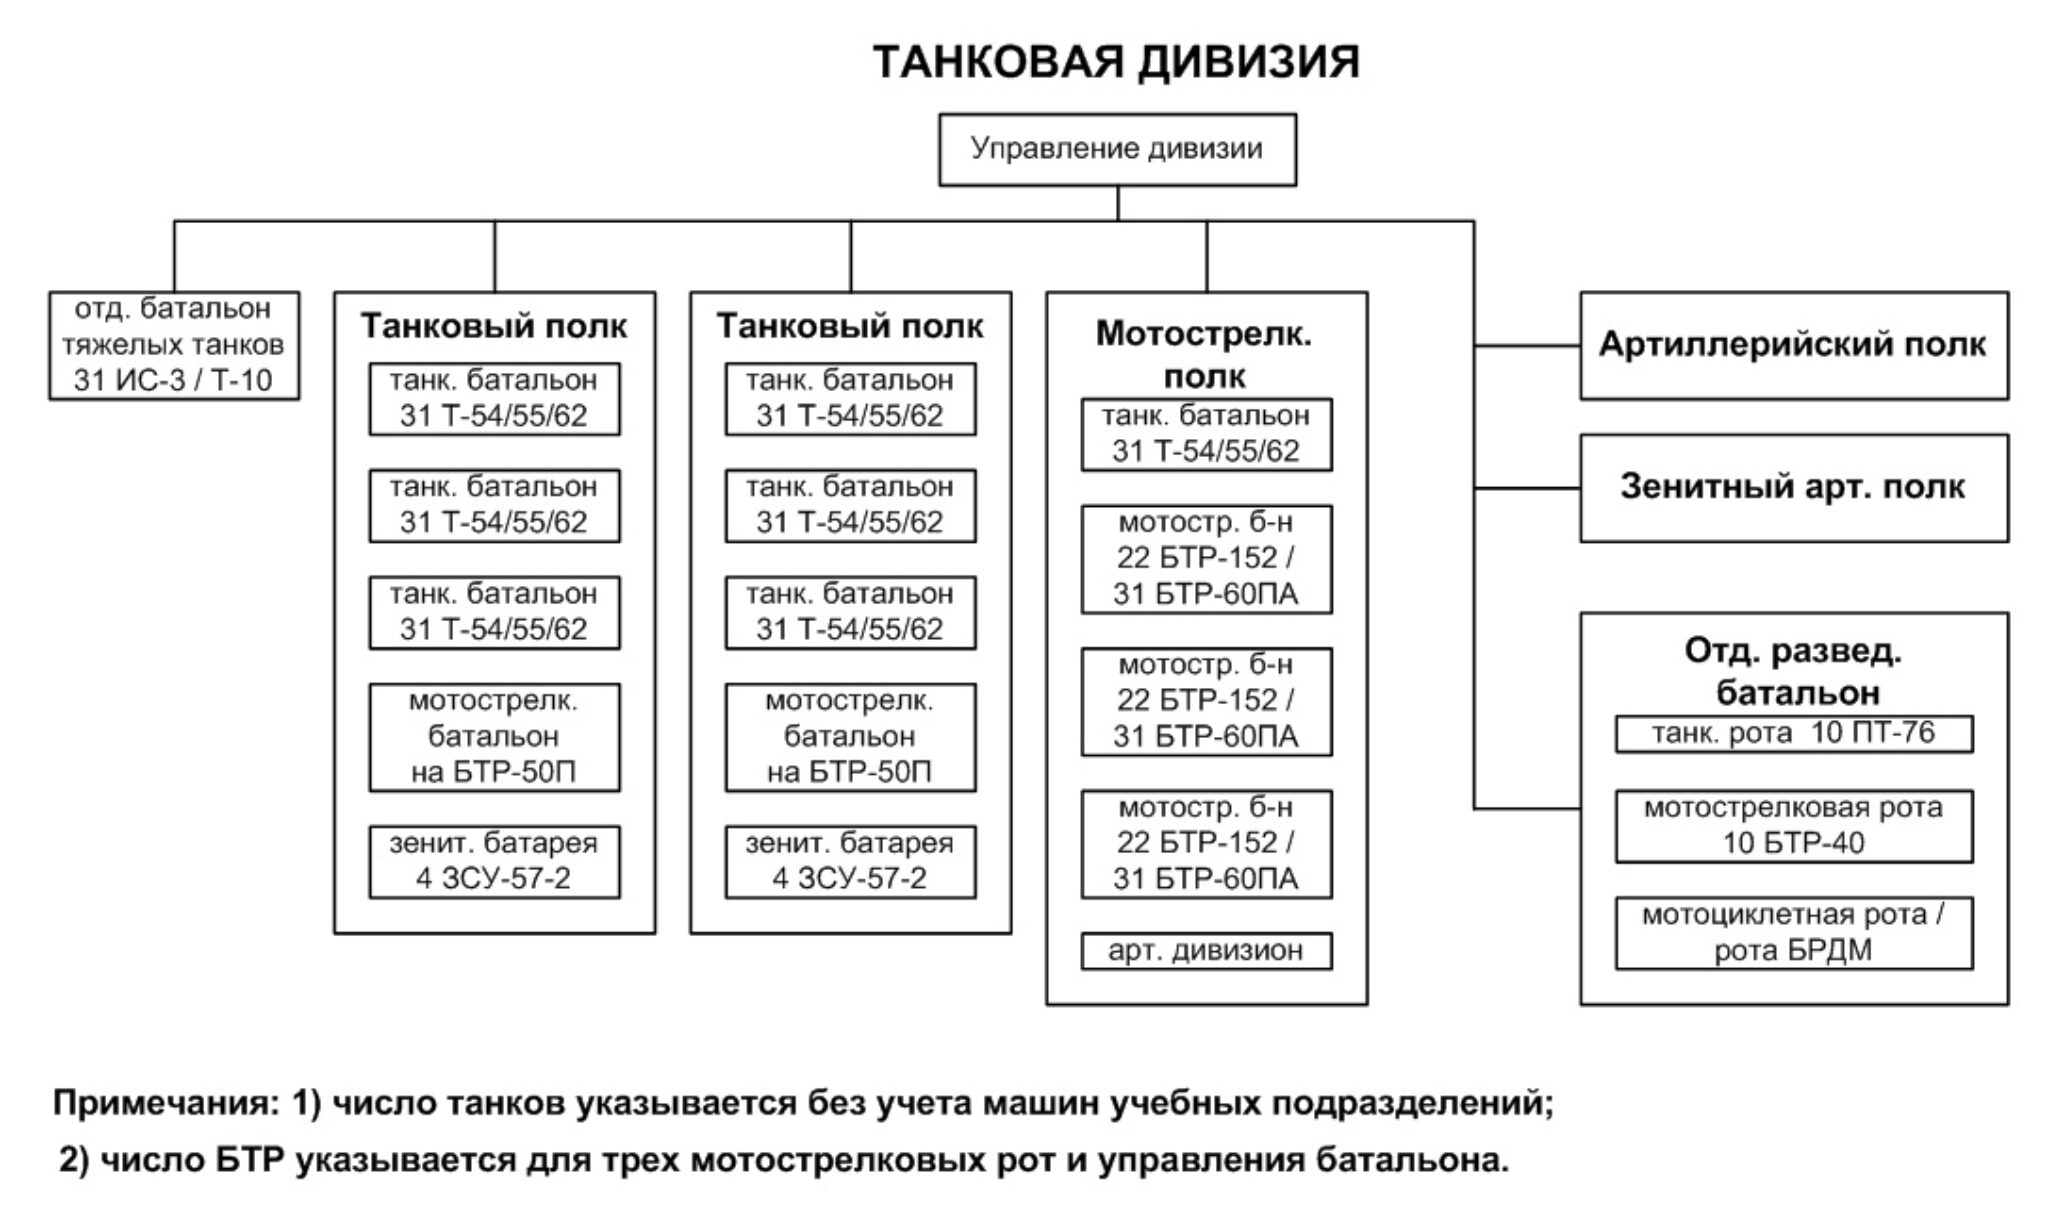 состав артиллерийского полка стрелковой дивизии